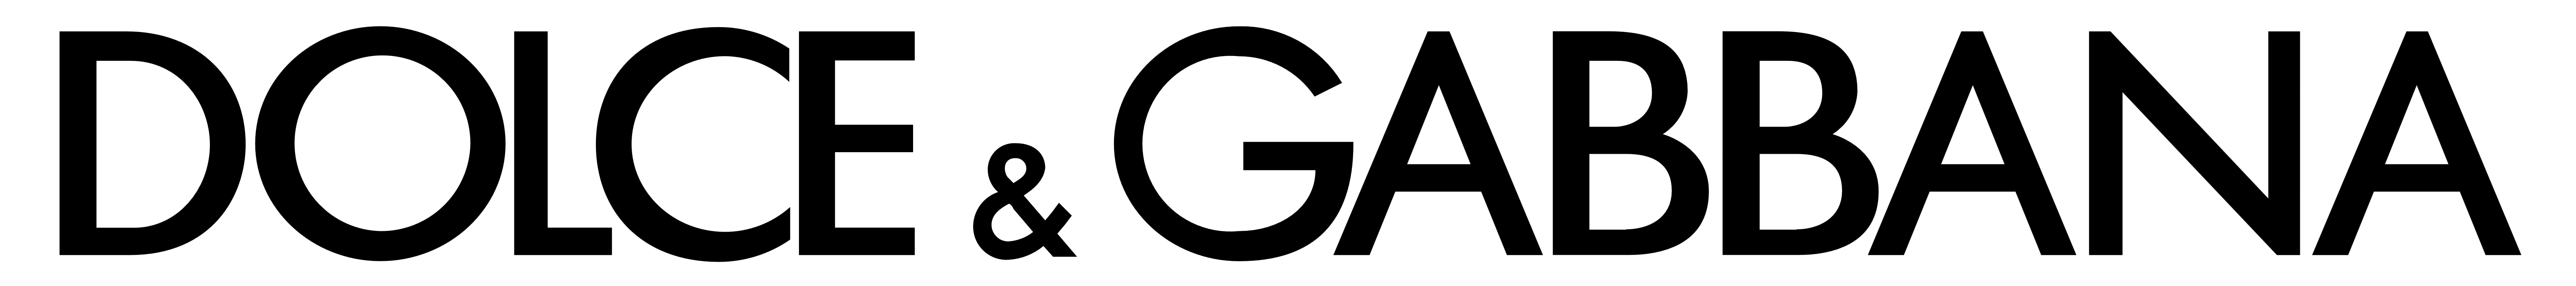 Dolche & Gabbana logo, logotype